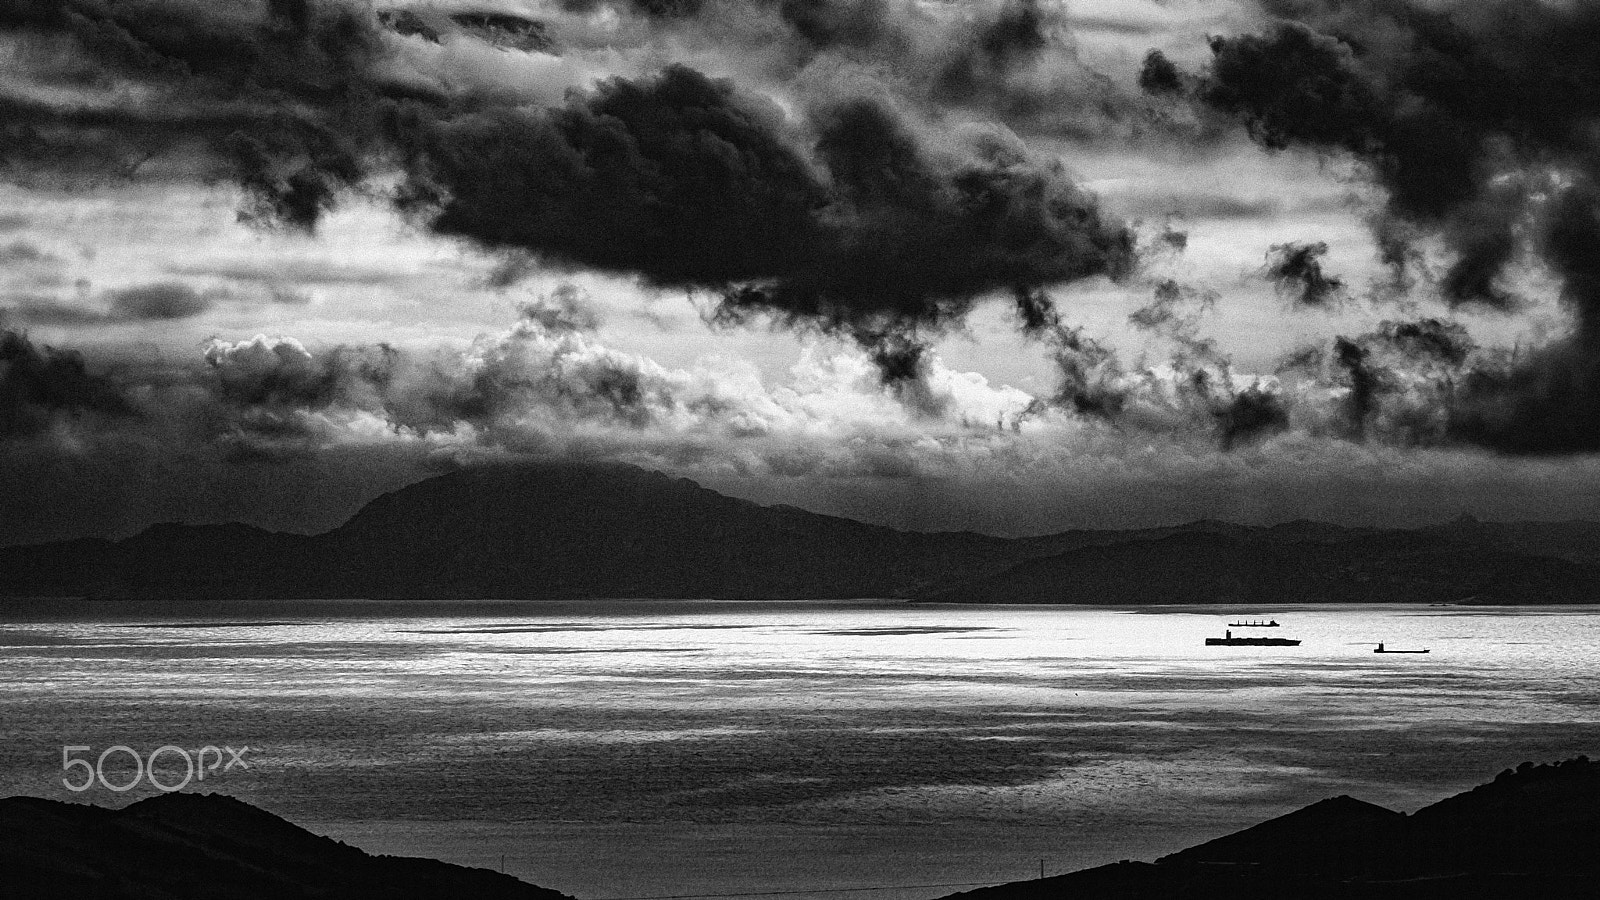 Nikon D80 + AF Zoom-Nikkor 35-70mm f/3.3-4.5 N sample photo. Strait of gibraltar #53 photography